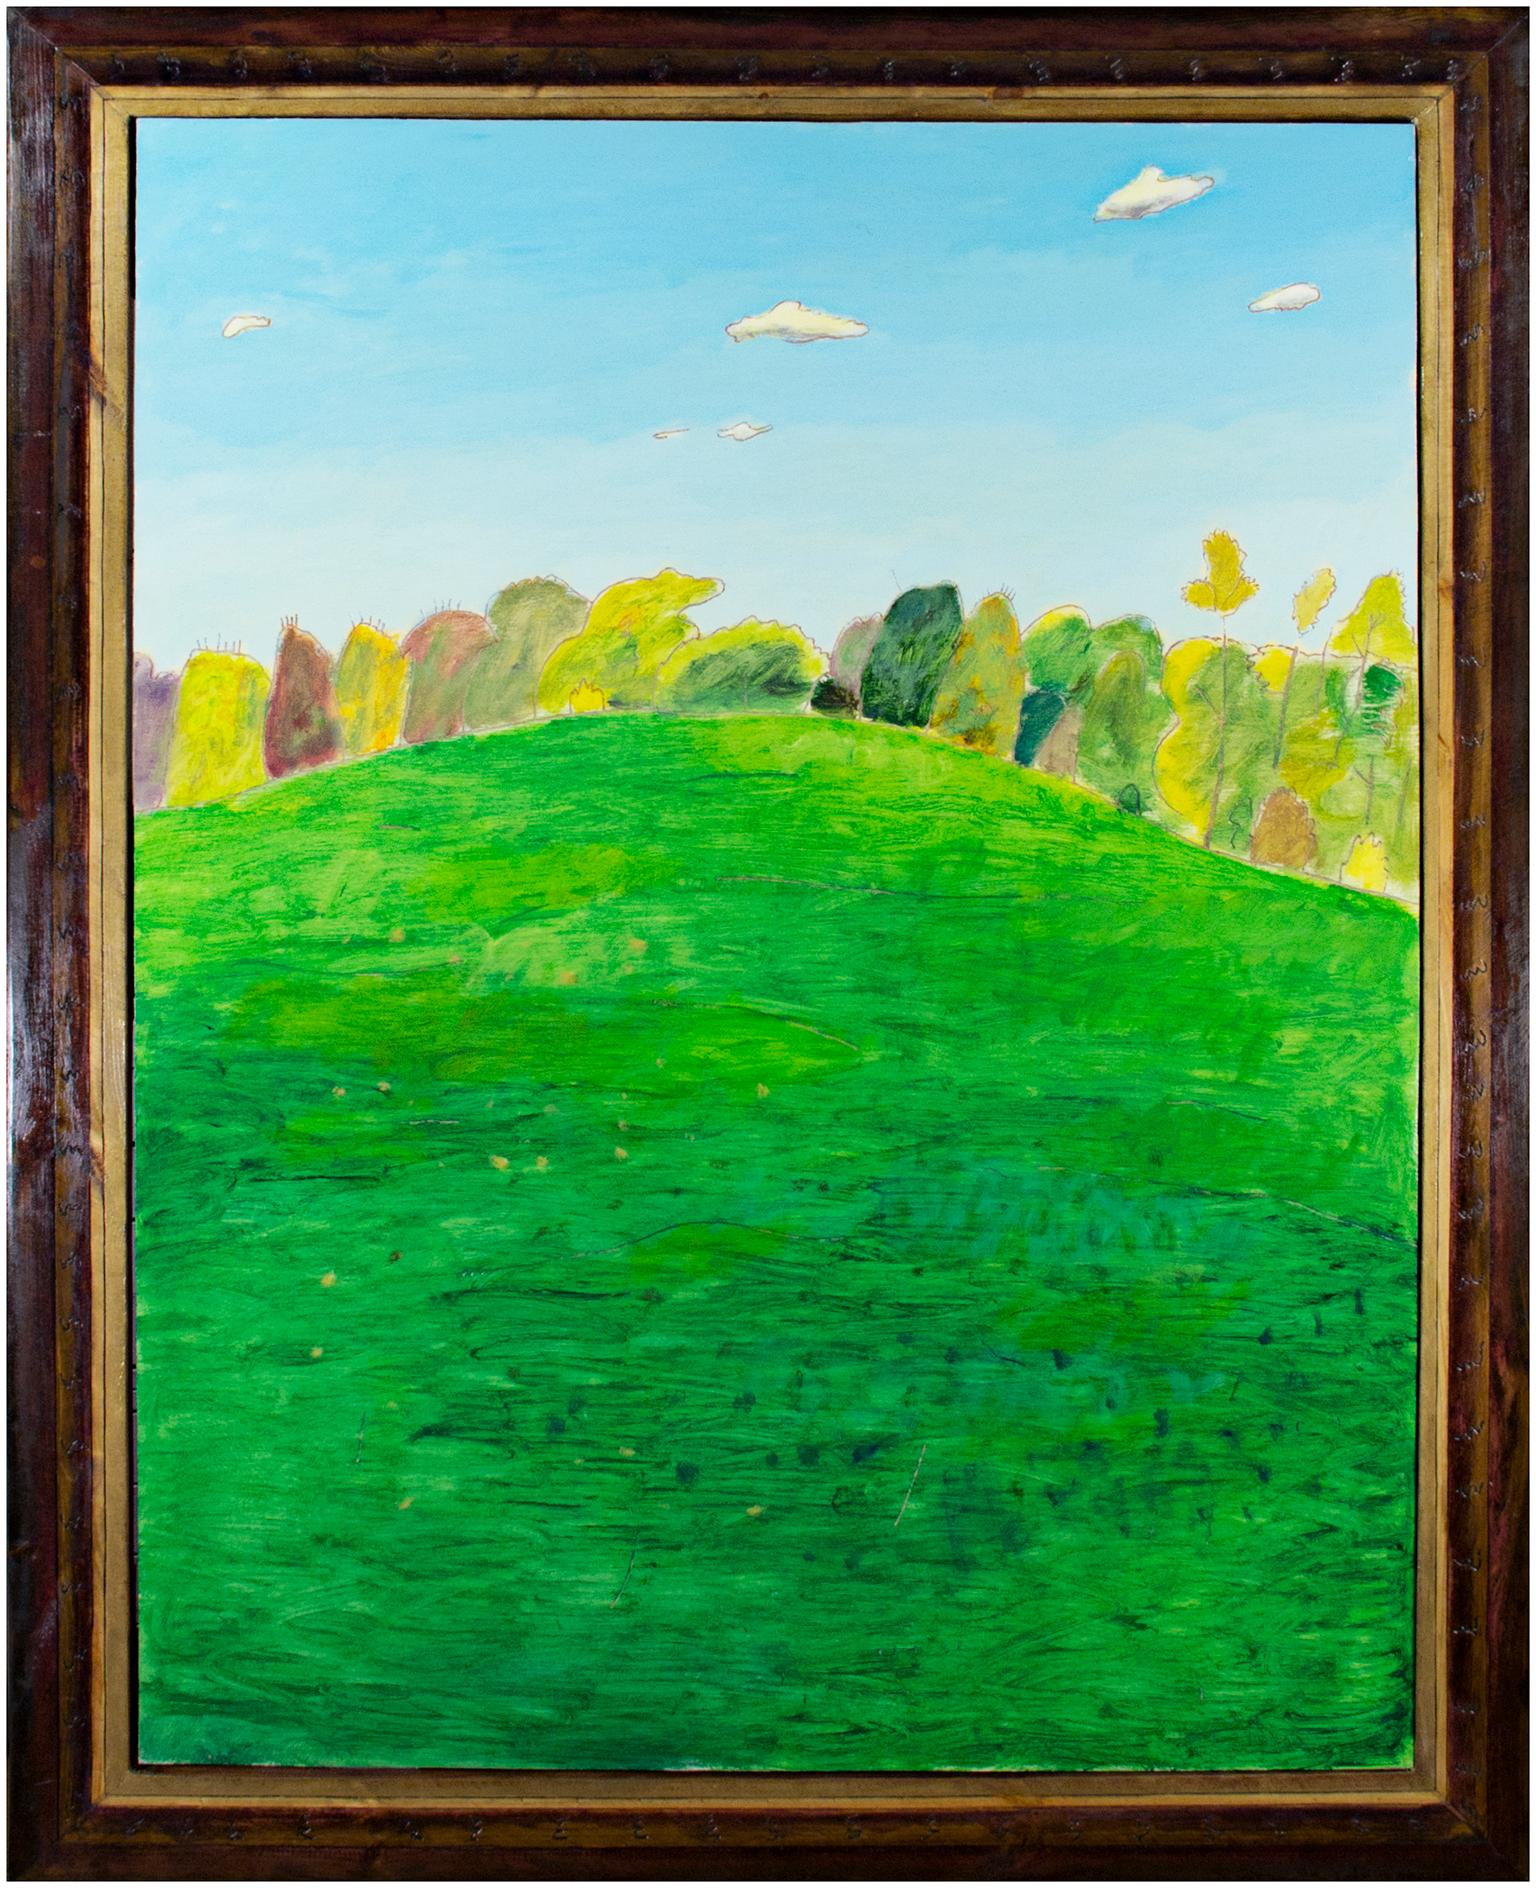 "Green Meadow" est une peinture à l'huile originale sur bois de Robert Richter. L'artiste a signé l'œuvre au dos. Cette œuvre d'art représente un vaste paysage vert avec des arbres jaunes, bruns et verts qui s'élèvent au loin. Le ciel est d'un bleu